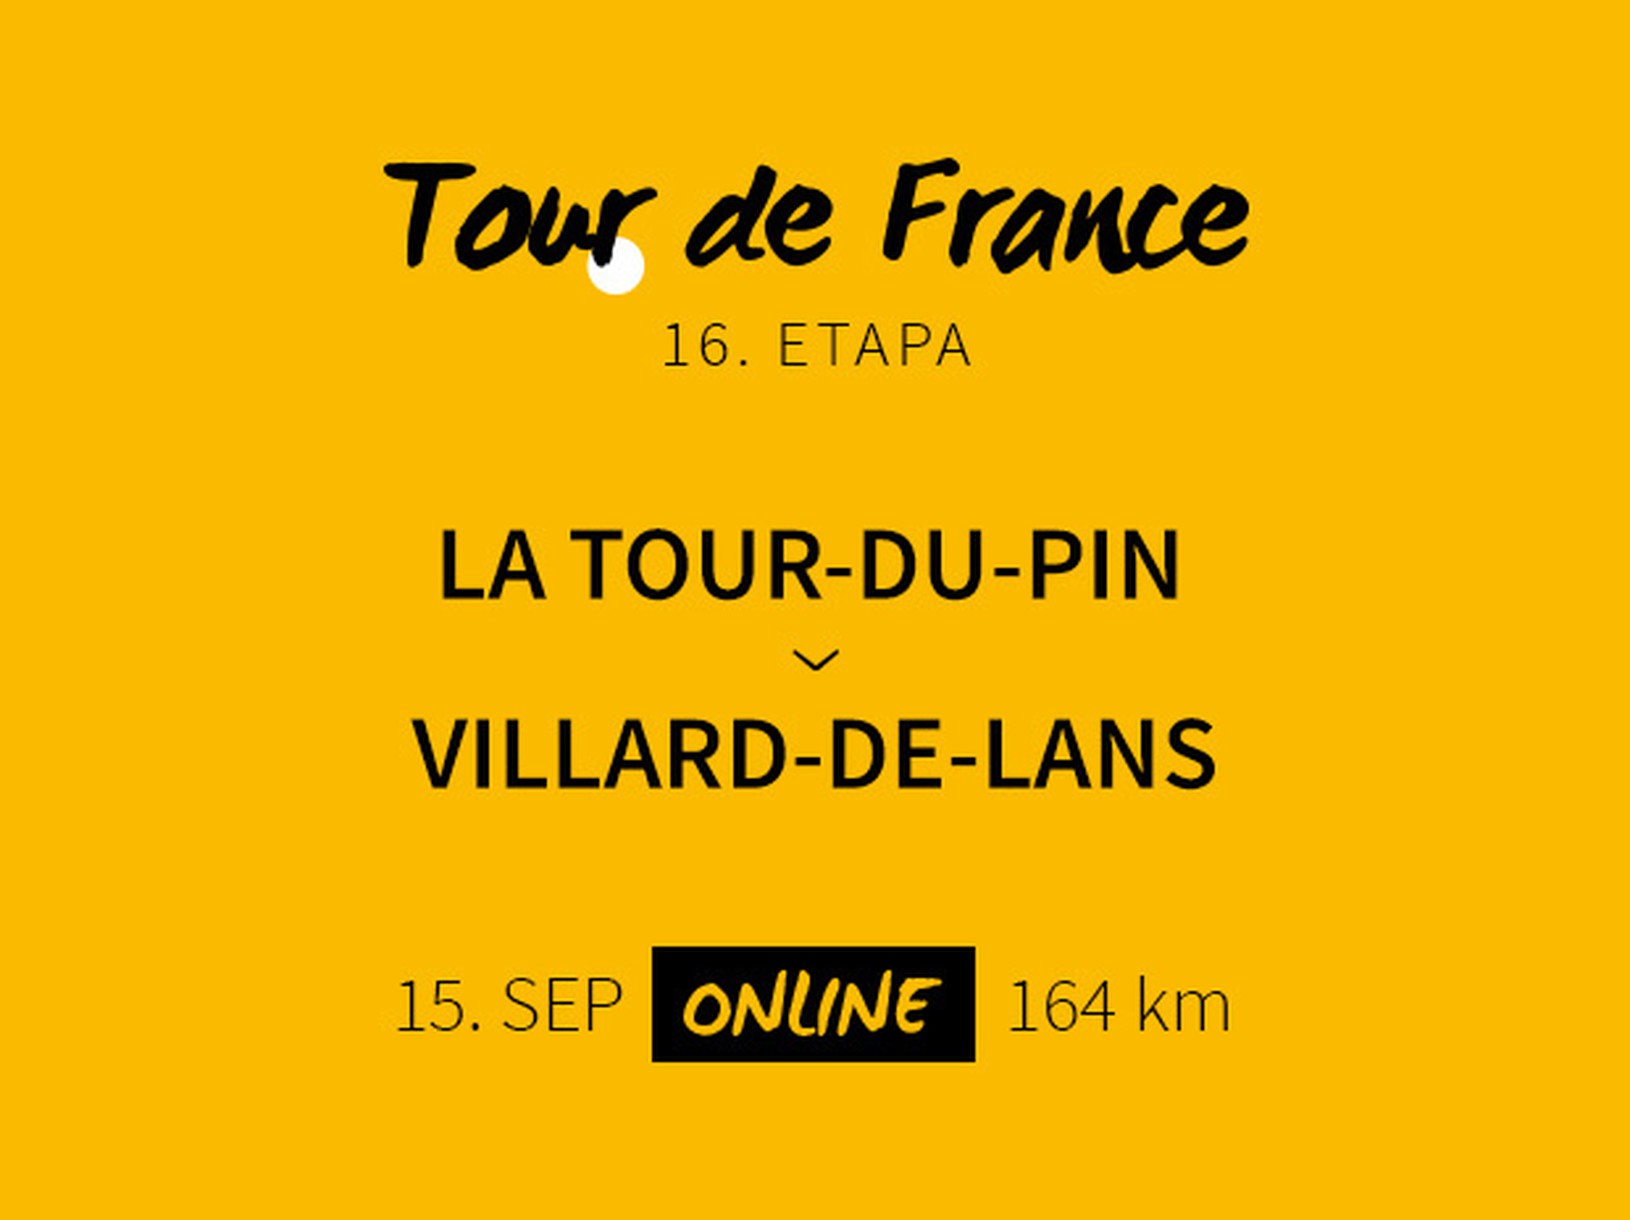 Tour de France 2020: